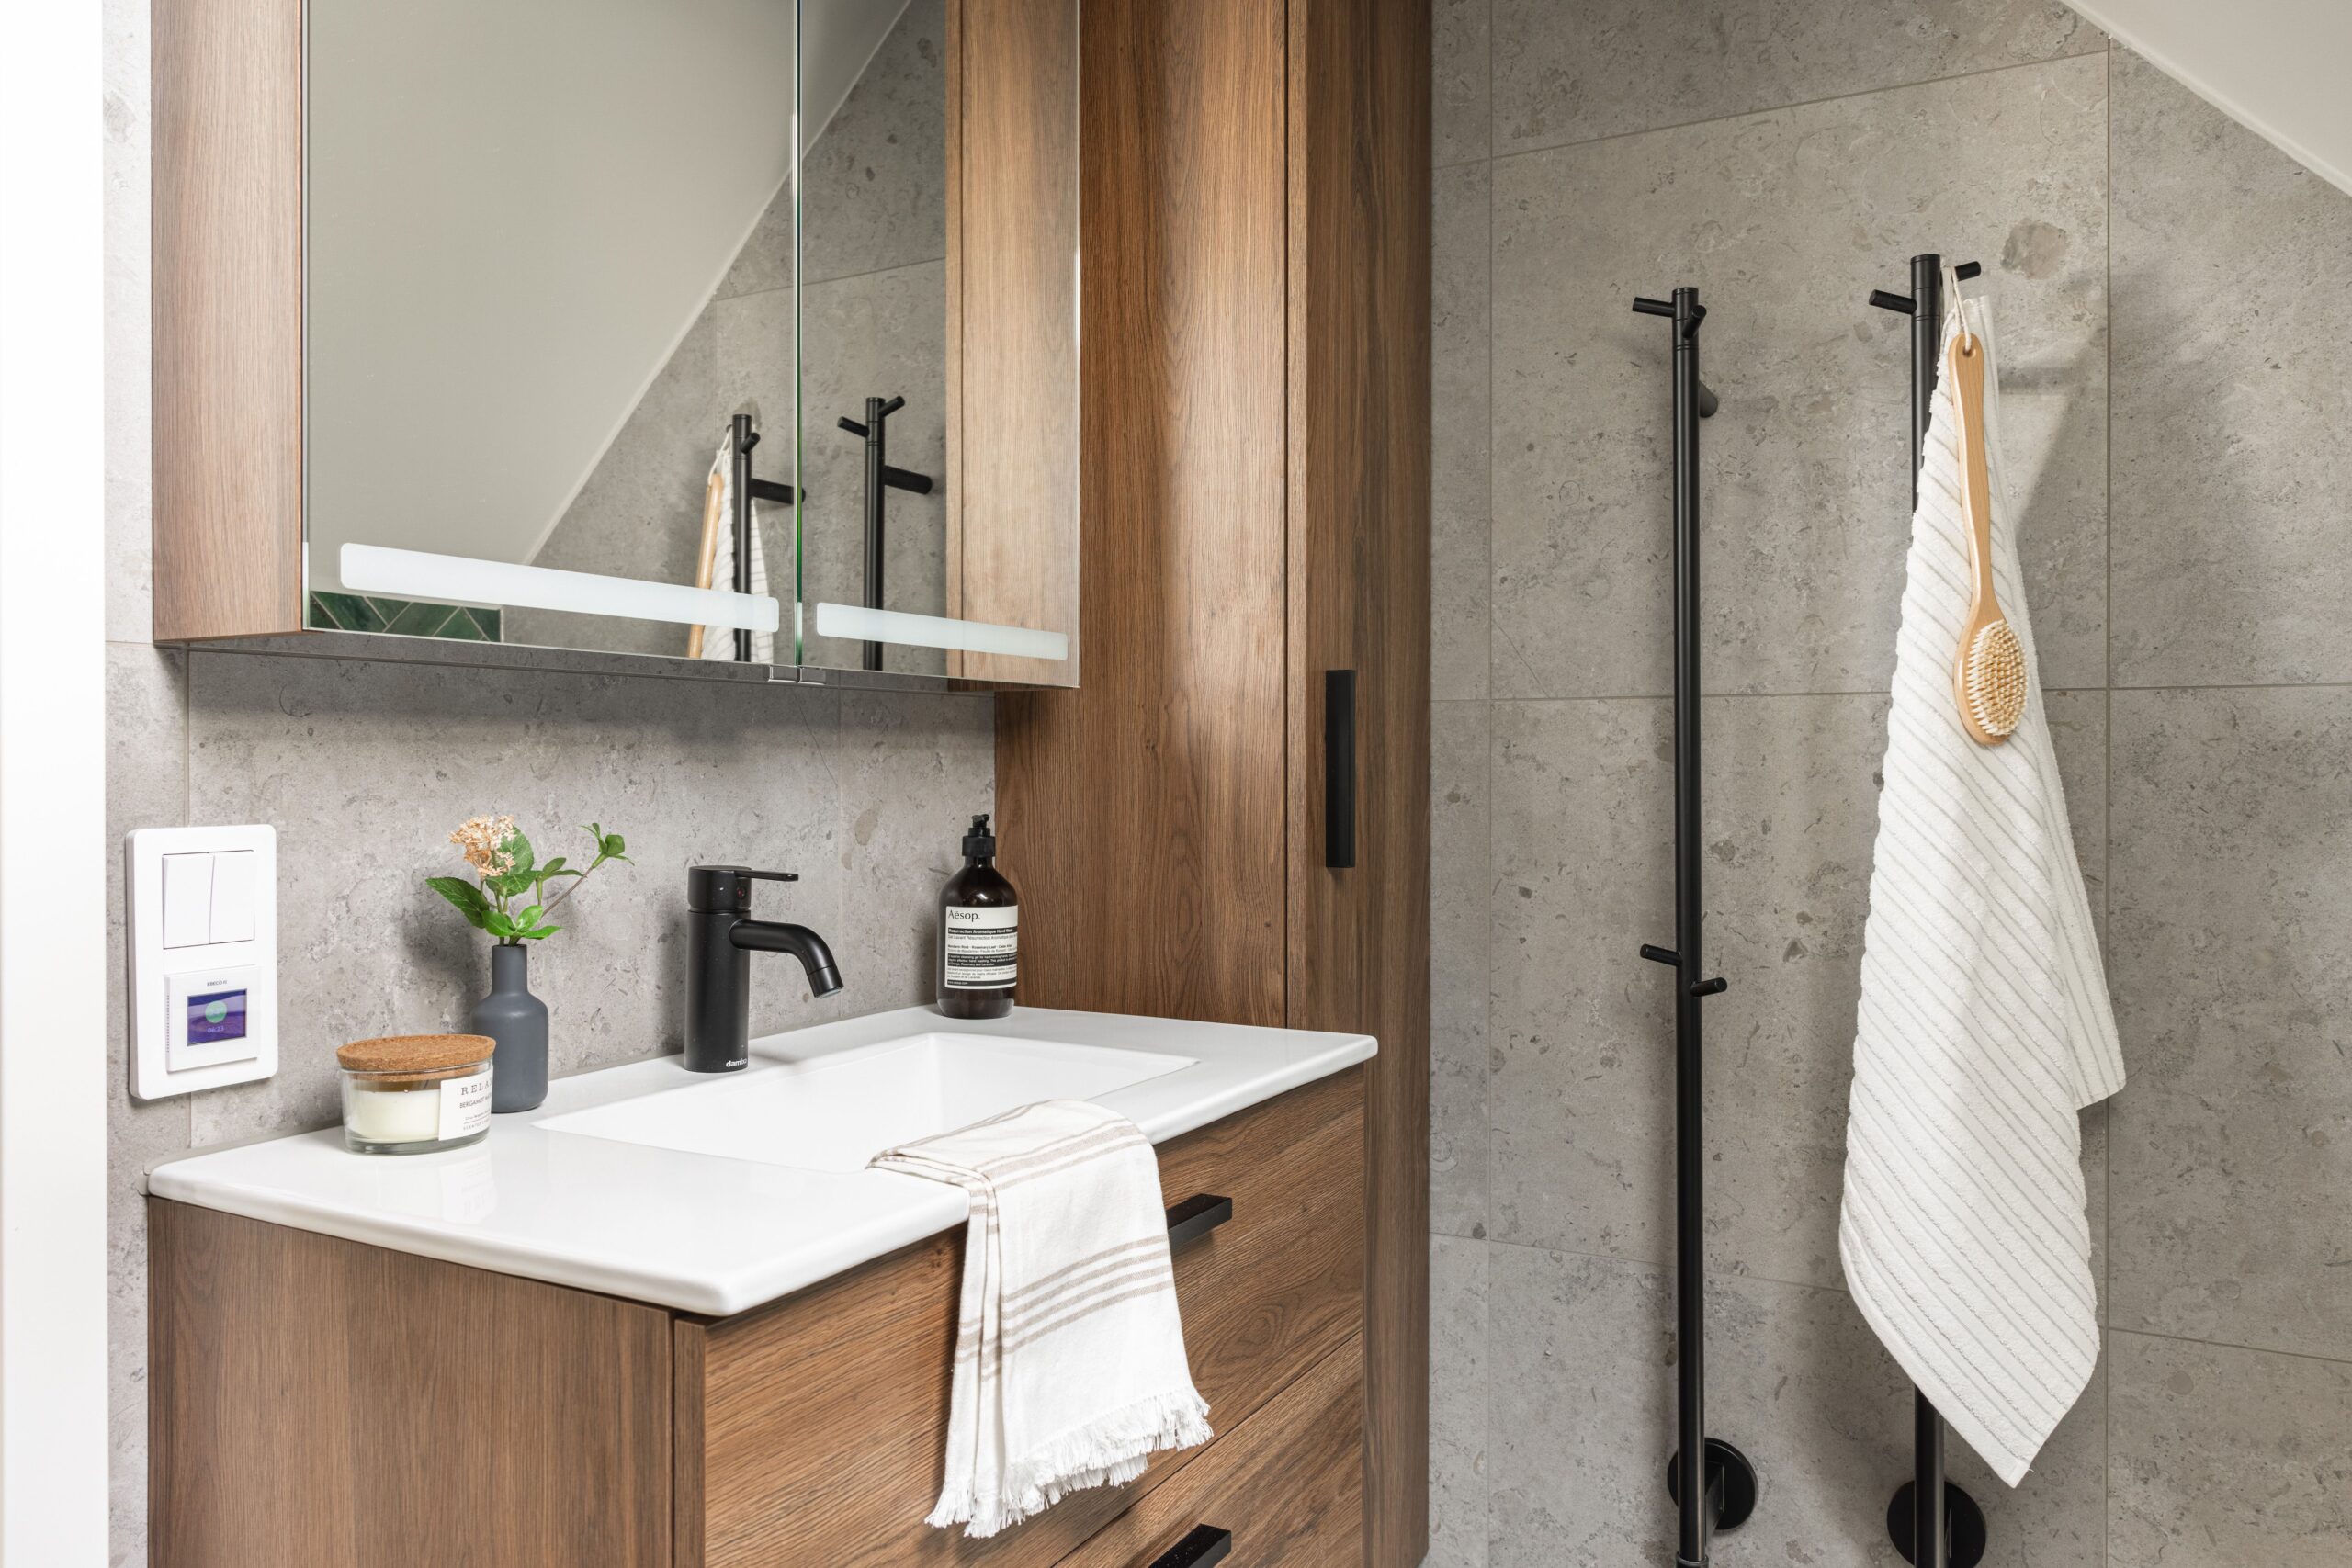 Ett modernt badrum med träskåp, en integrerad vit handfat, svarta kranar och en spegel.